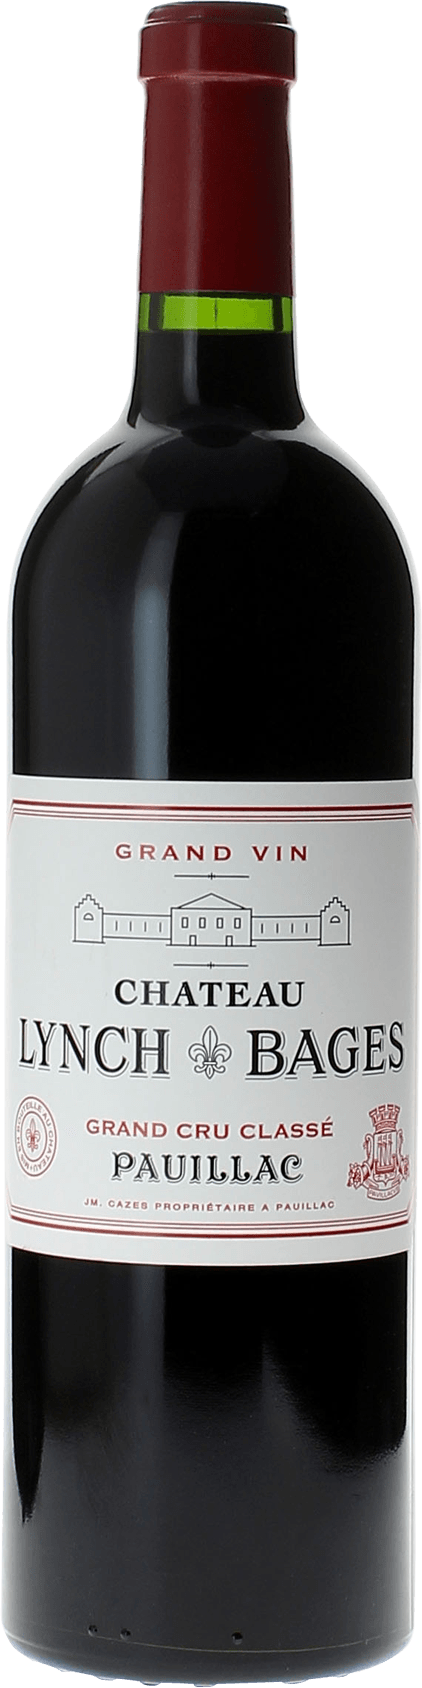 Lynch bages 1990 5 me Grand cru class Pauillac, Bordeaux rouge